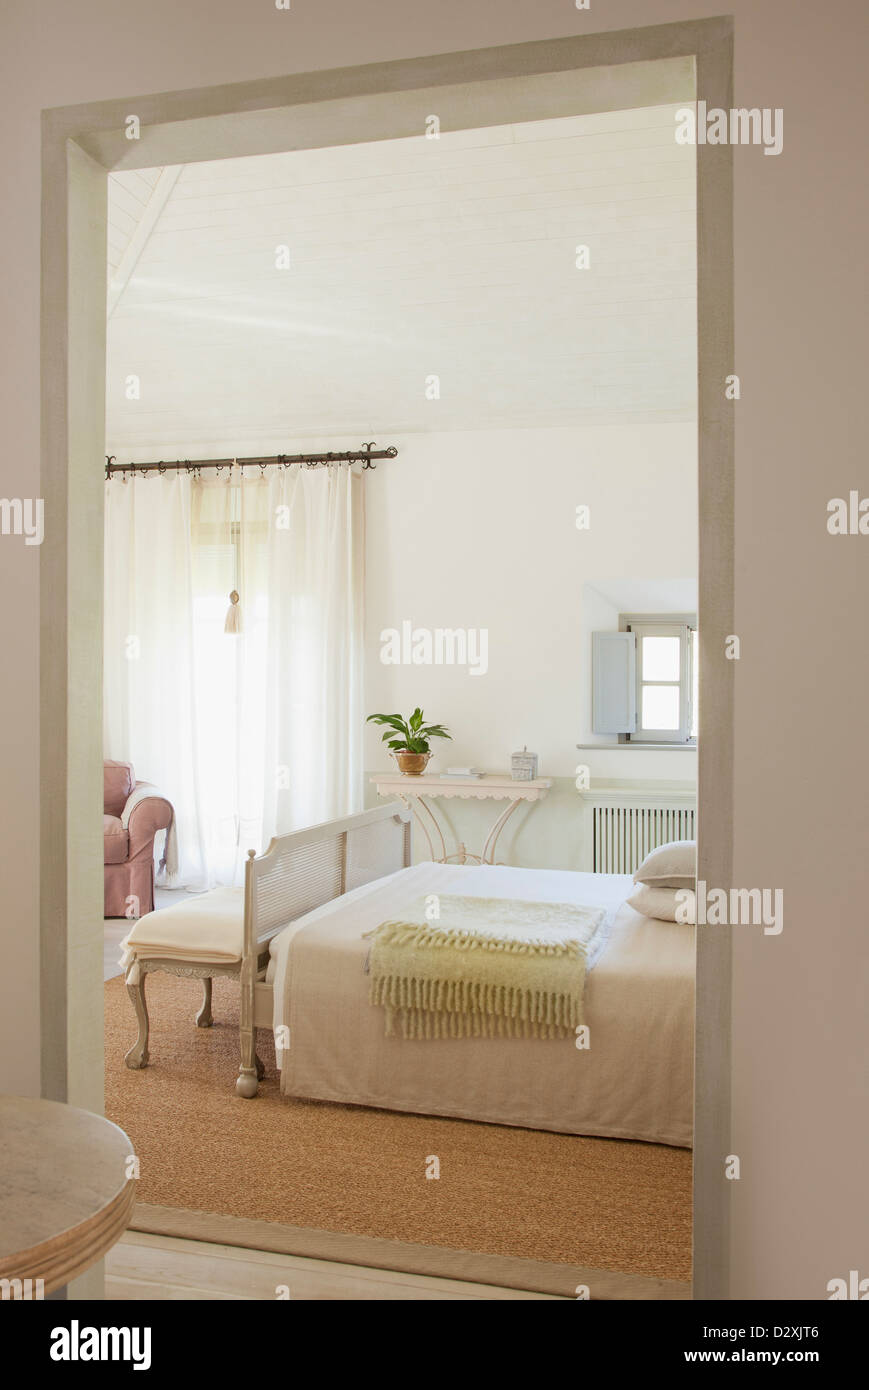 View of luxury bedroom through doorway Stock Photo